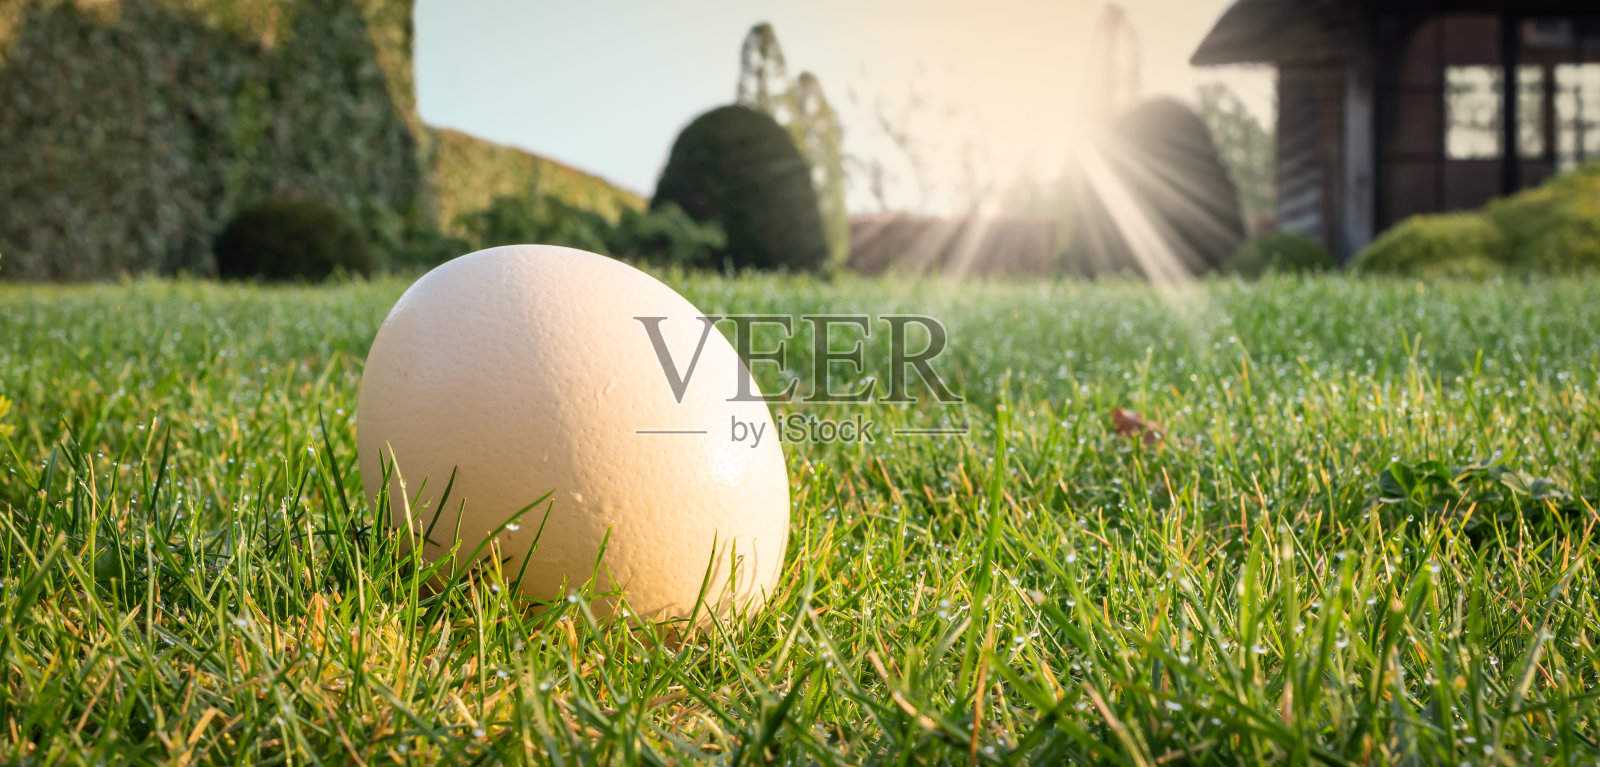 寻找复活节彩蛋的主题。在一个阳光明媚的早晨，花园里的草坪上有一颗白色的天然鸡蛋。照片摄影图片